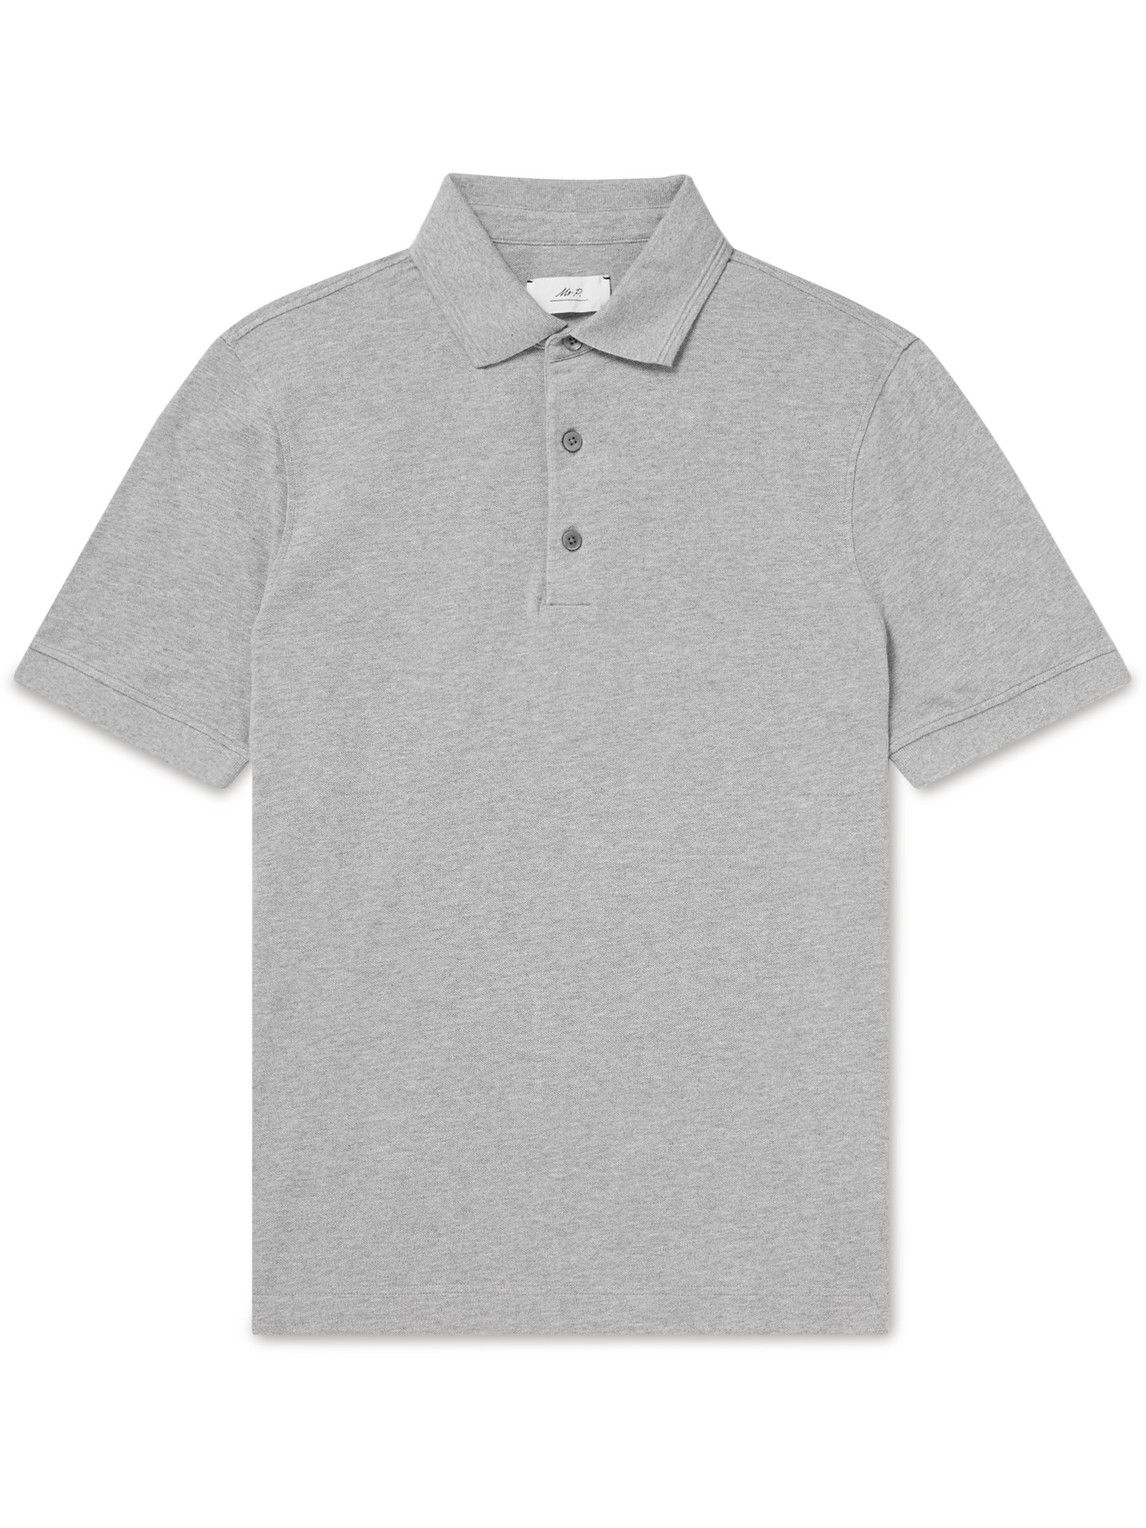 Mr P Cotton-piqué Polo Shirt In Gray